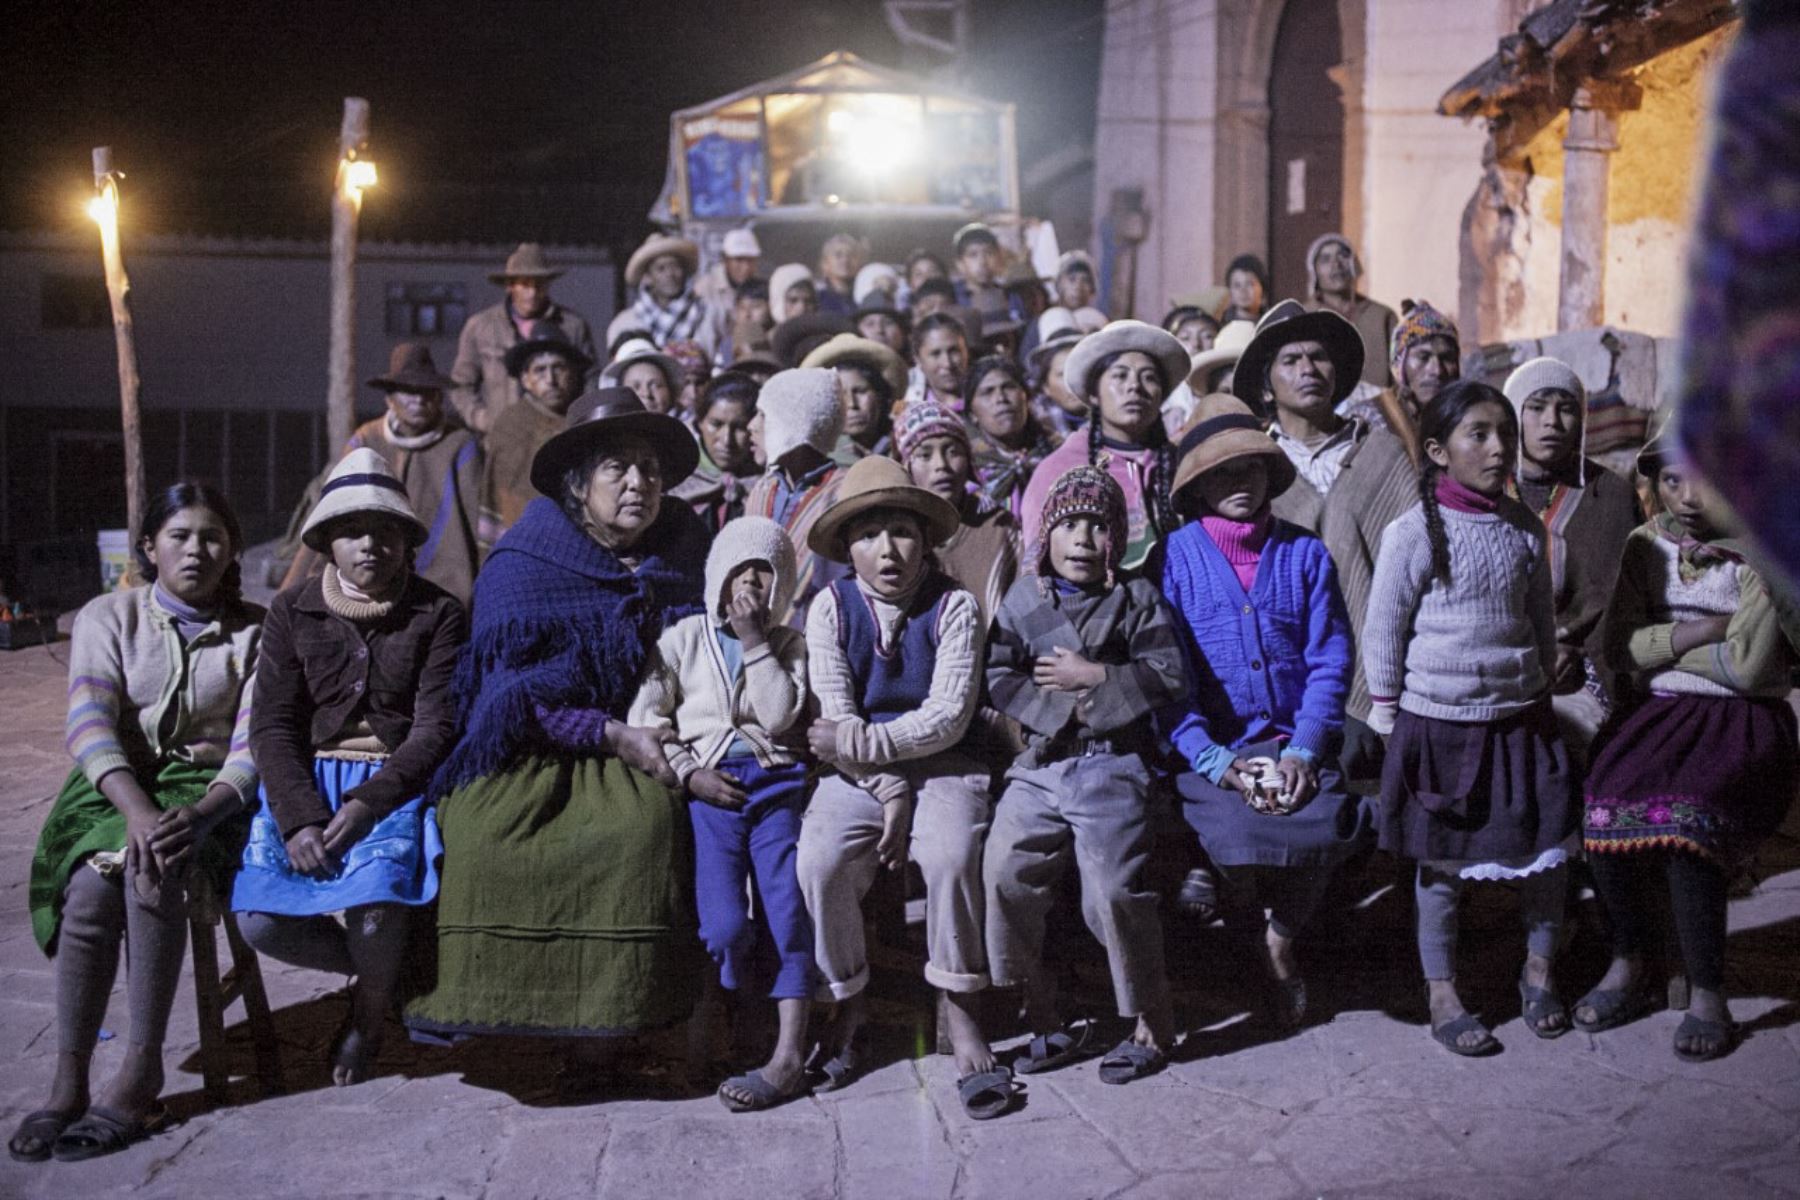 Willaq Pirqa. El cine de mi pueblo es un largometraje peruano de ficción, hecho completamente en quechua y filmado íntegramente en la comunidad de Maras, Cusco. Vale decir que el Ministerio de Cultura jugó un papel importante al promover su realización y distribución a través de la política de Estímulos Económicos, que anualmente otorga este sector para la promoción de la industria cinematográfica en nuestro país. 

Foto: ANDINA/MINCUL